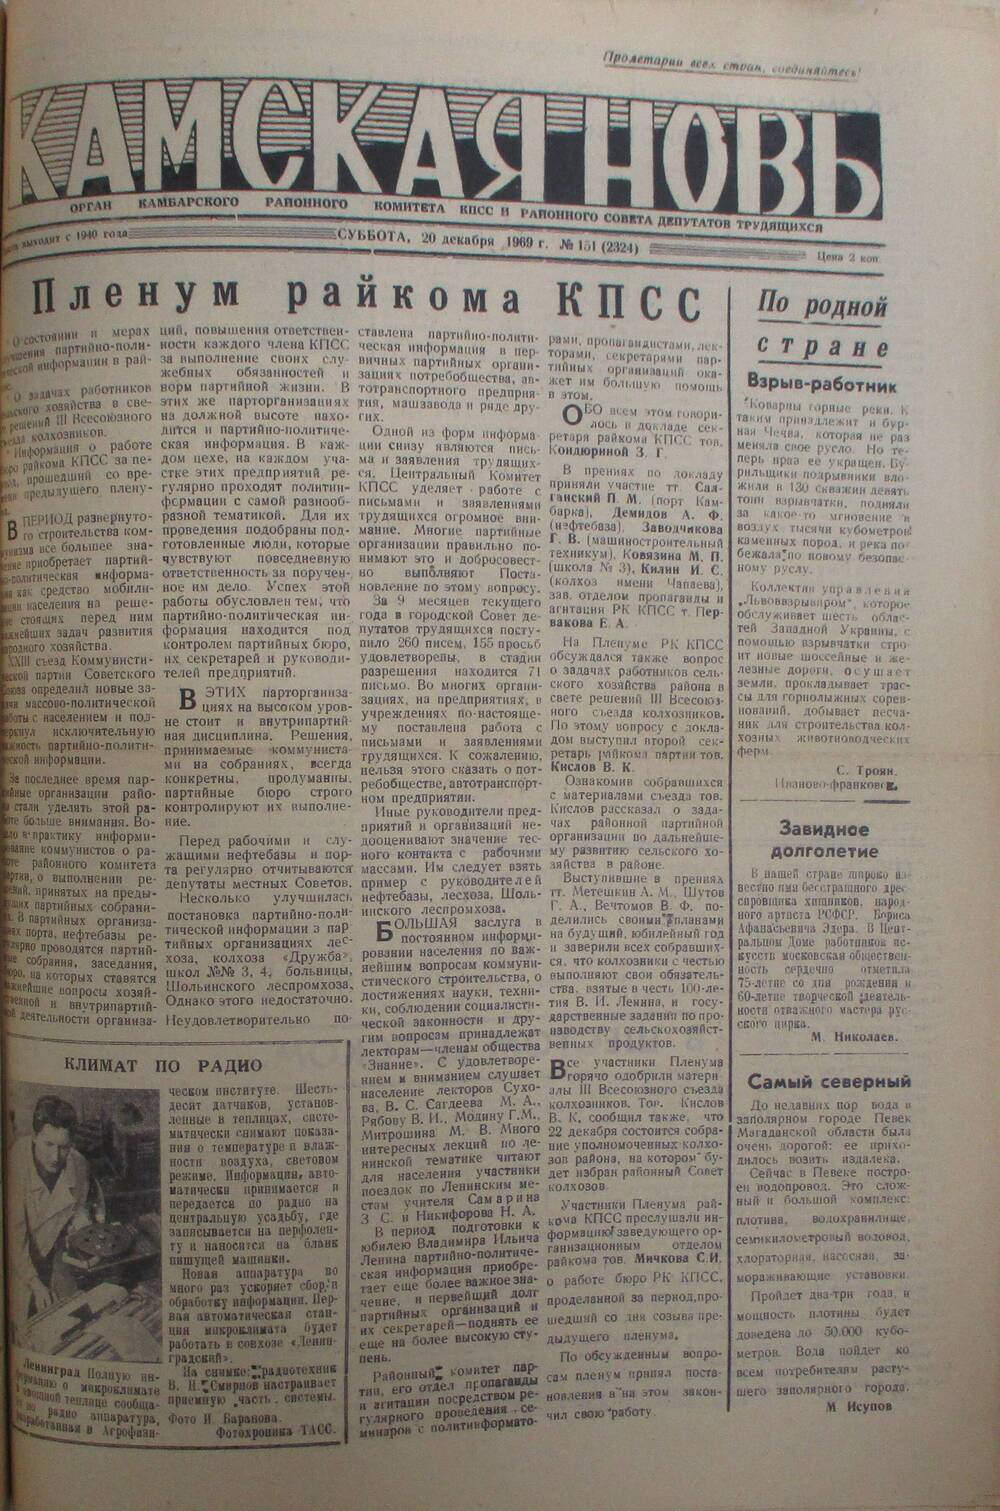 Газеты Камская новь за 1969 год, орган Камбарского райсовета и  РККПСС, с №1 по №66, с №68 по №156. №151.